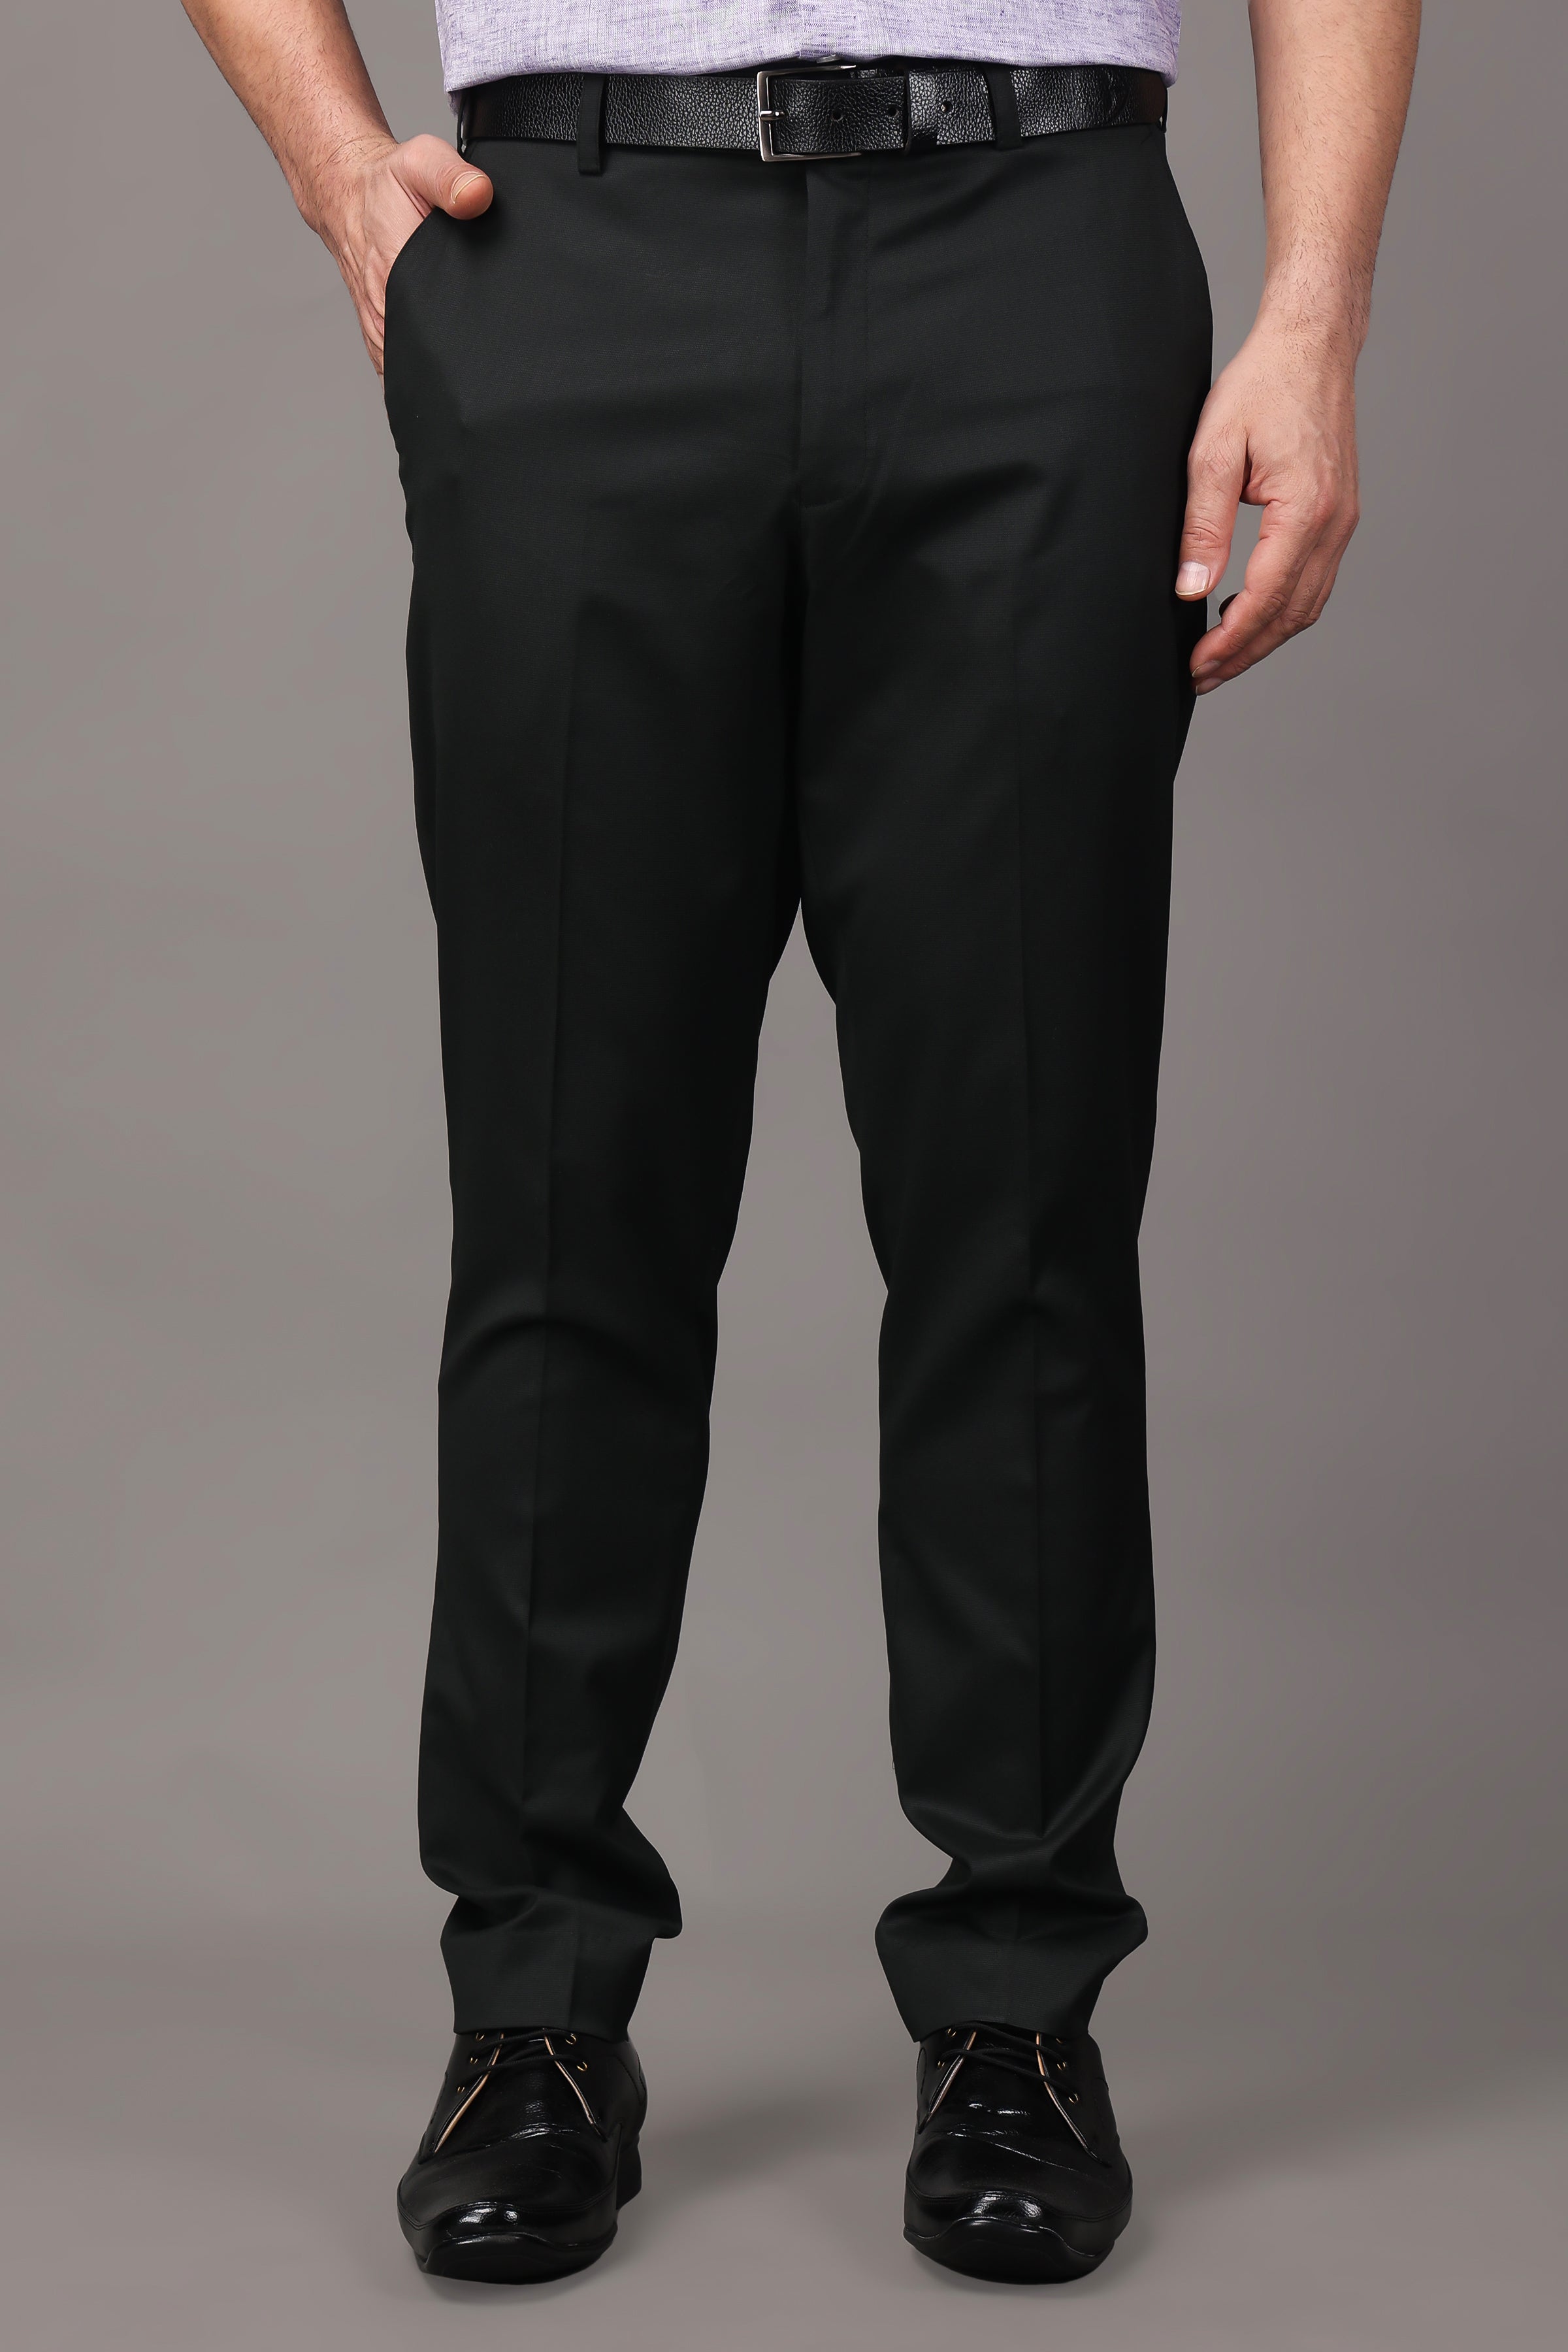 Buy Arrow Tartan Check Dobby Formal Trousers - NNNOW.com